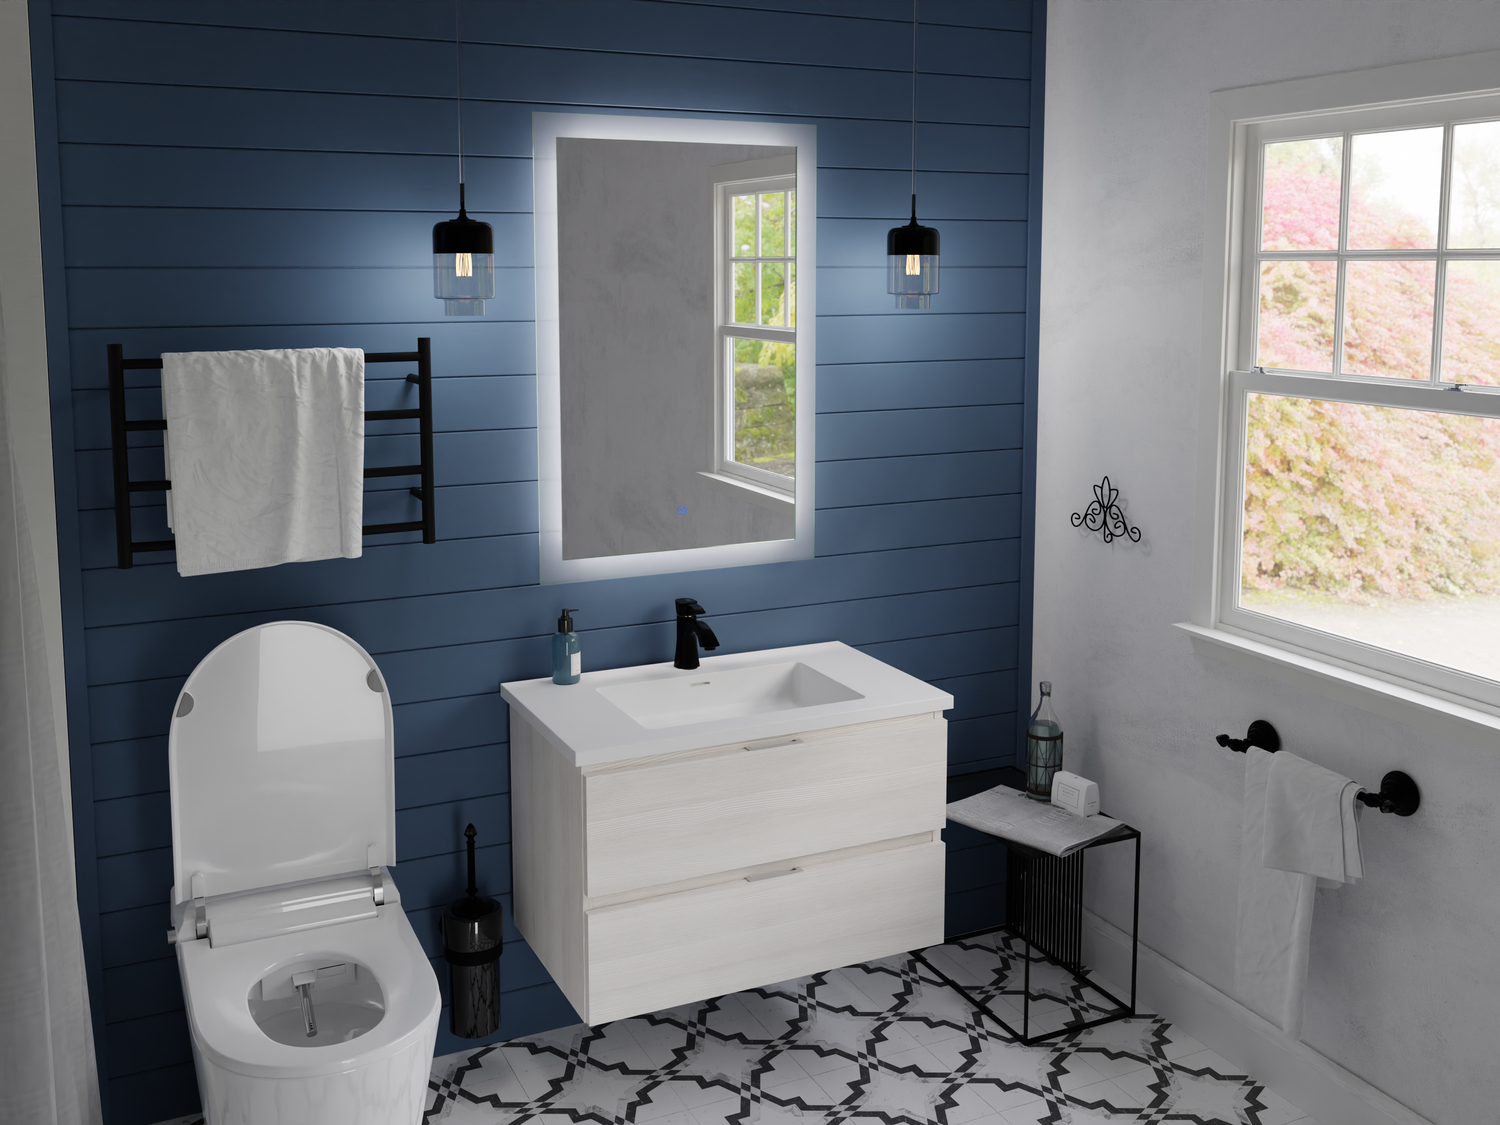 72 inch modern bathroom vanity Anzzi BATHROOM - Vanities - Vanity Sets White